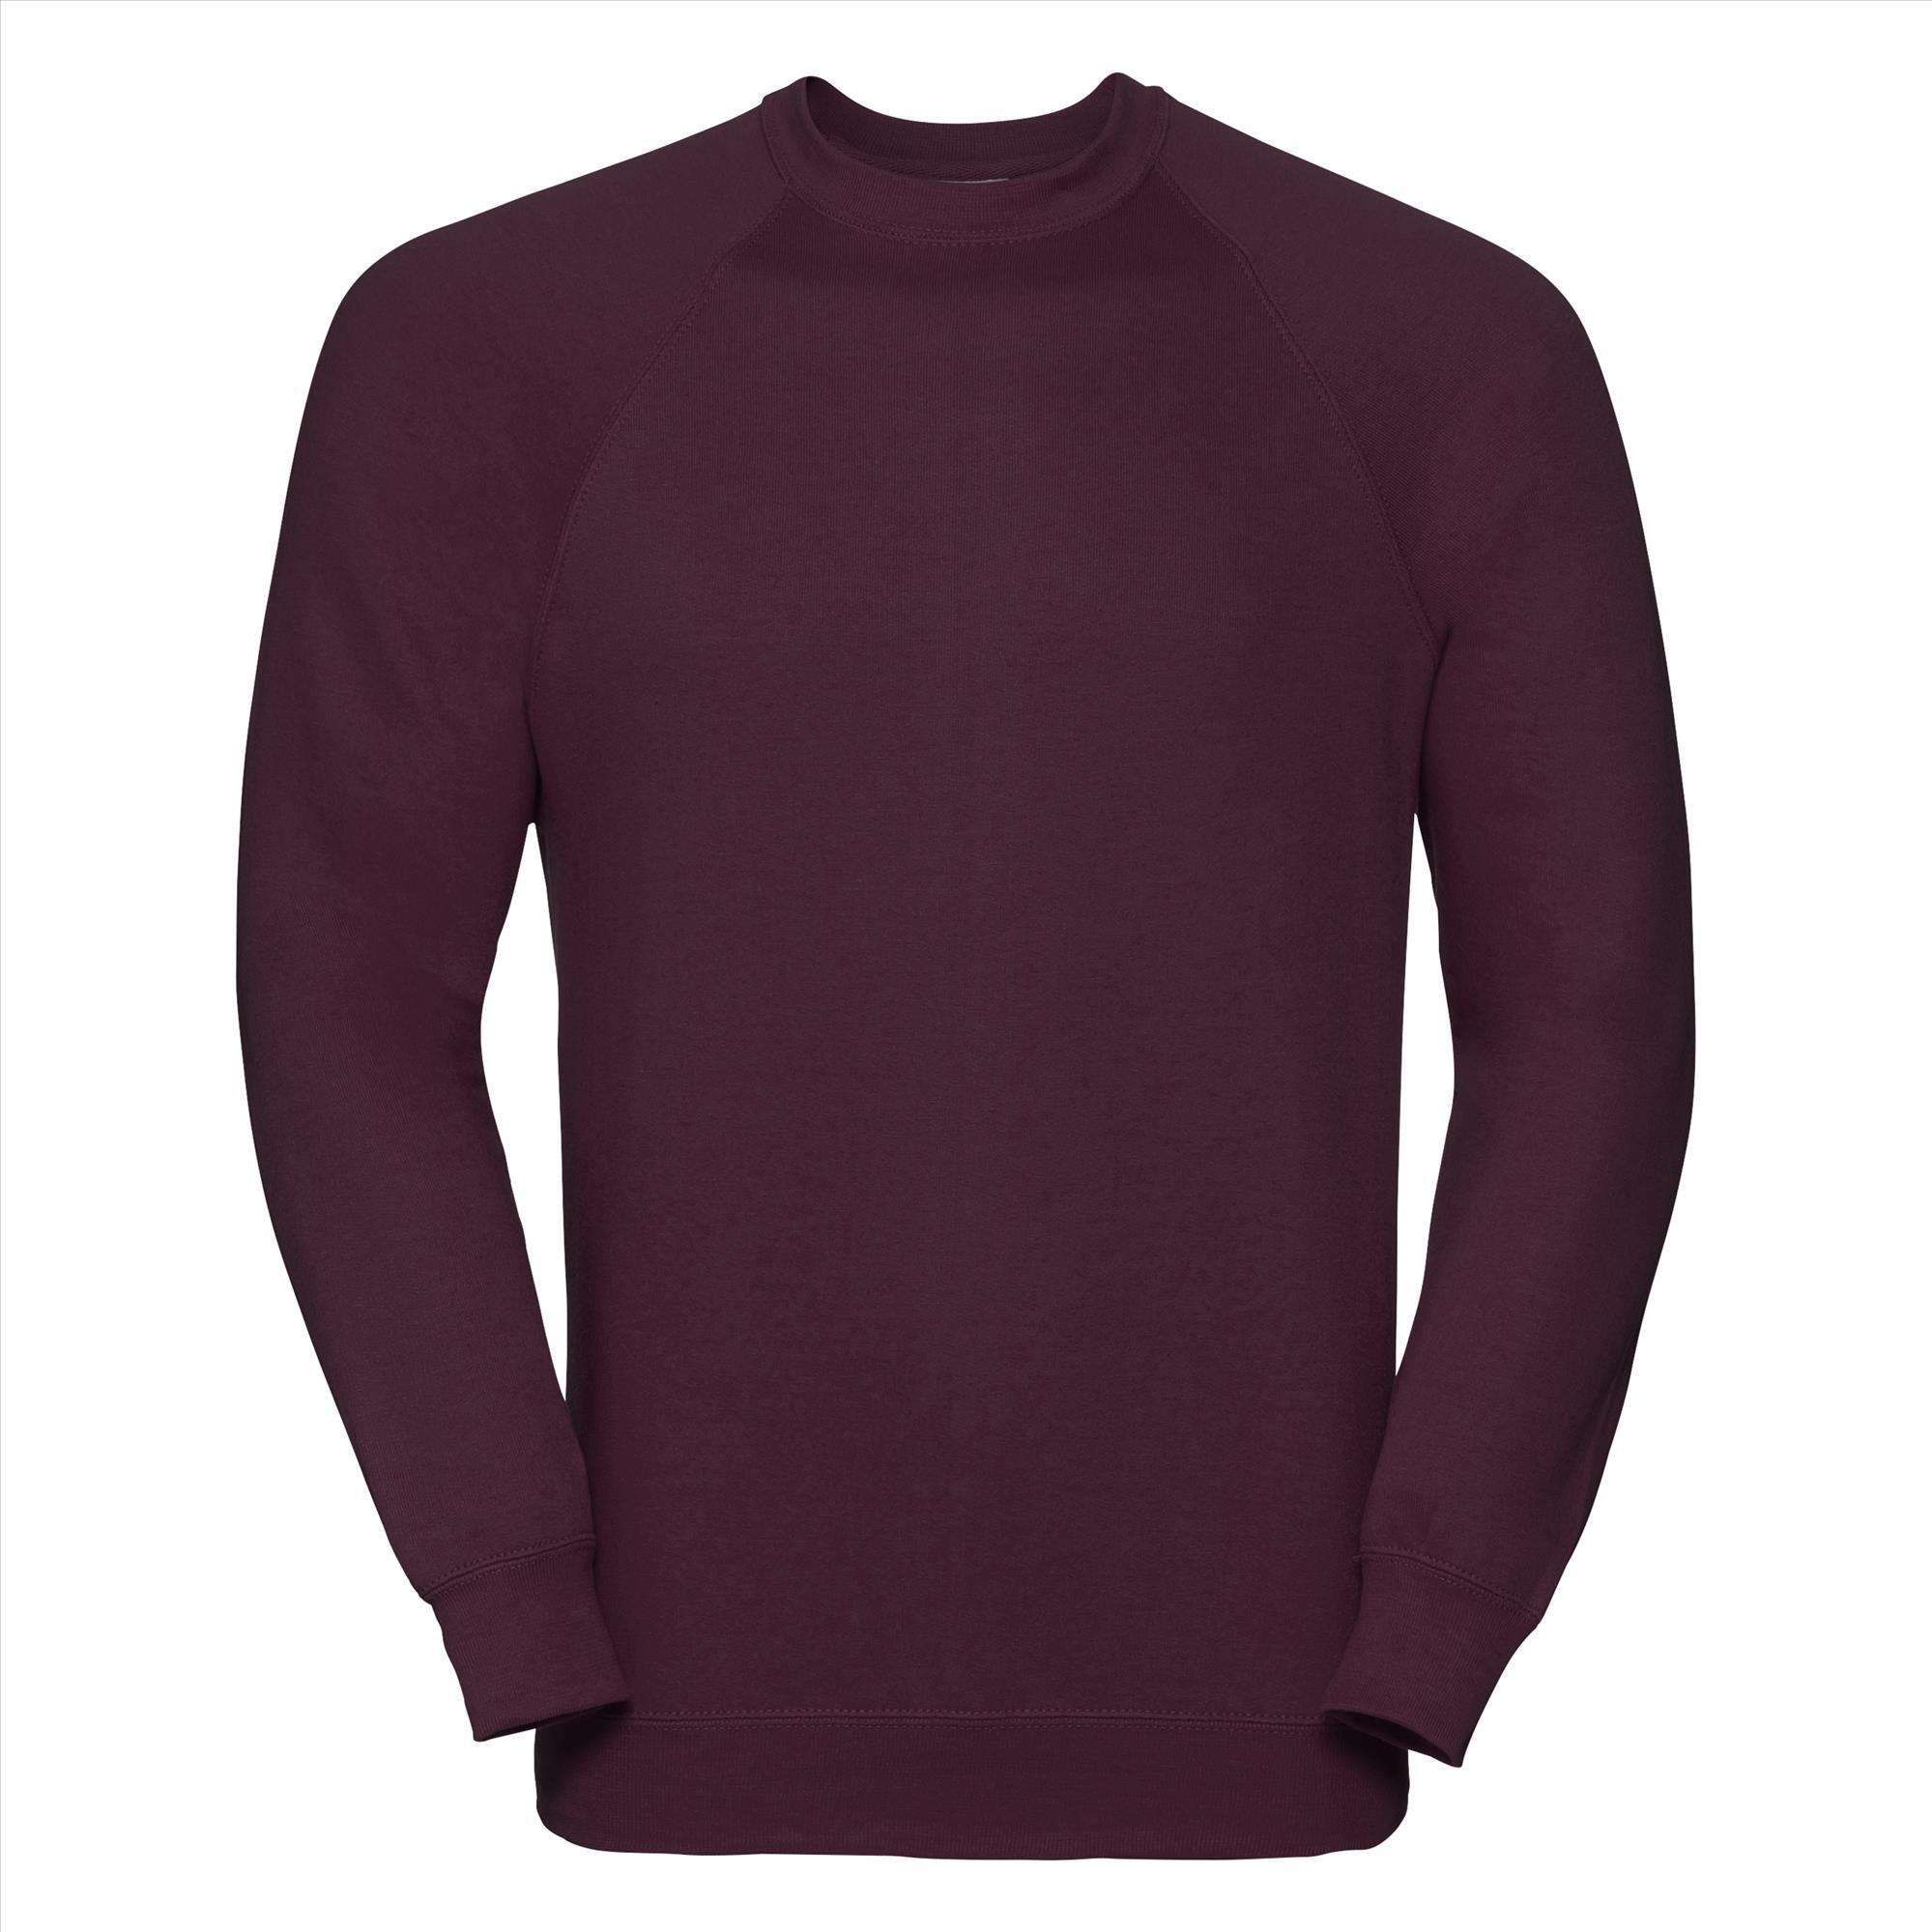 Sweatshirt trui bordeaux voor mannen perfect voor personaliseren bedrukking